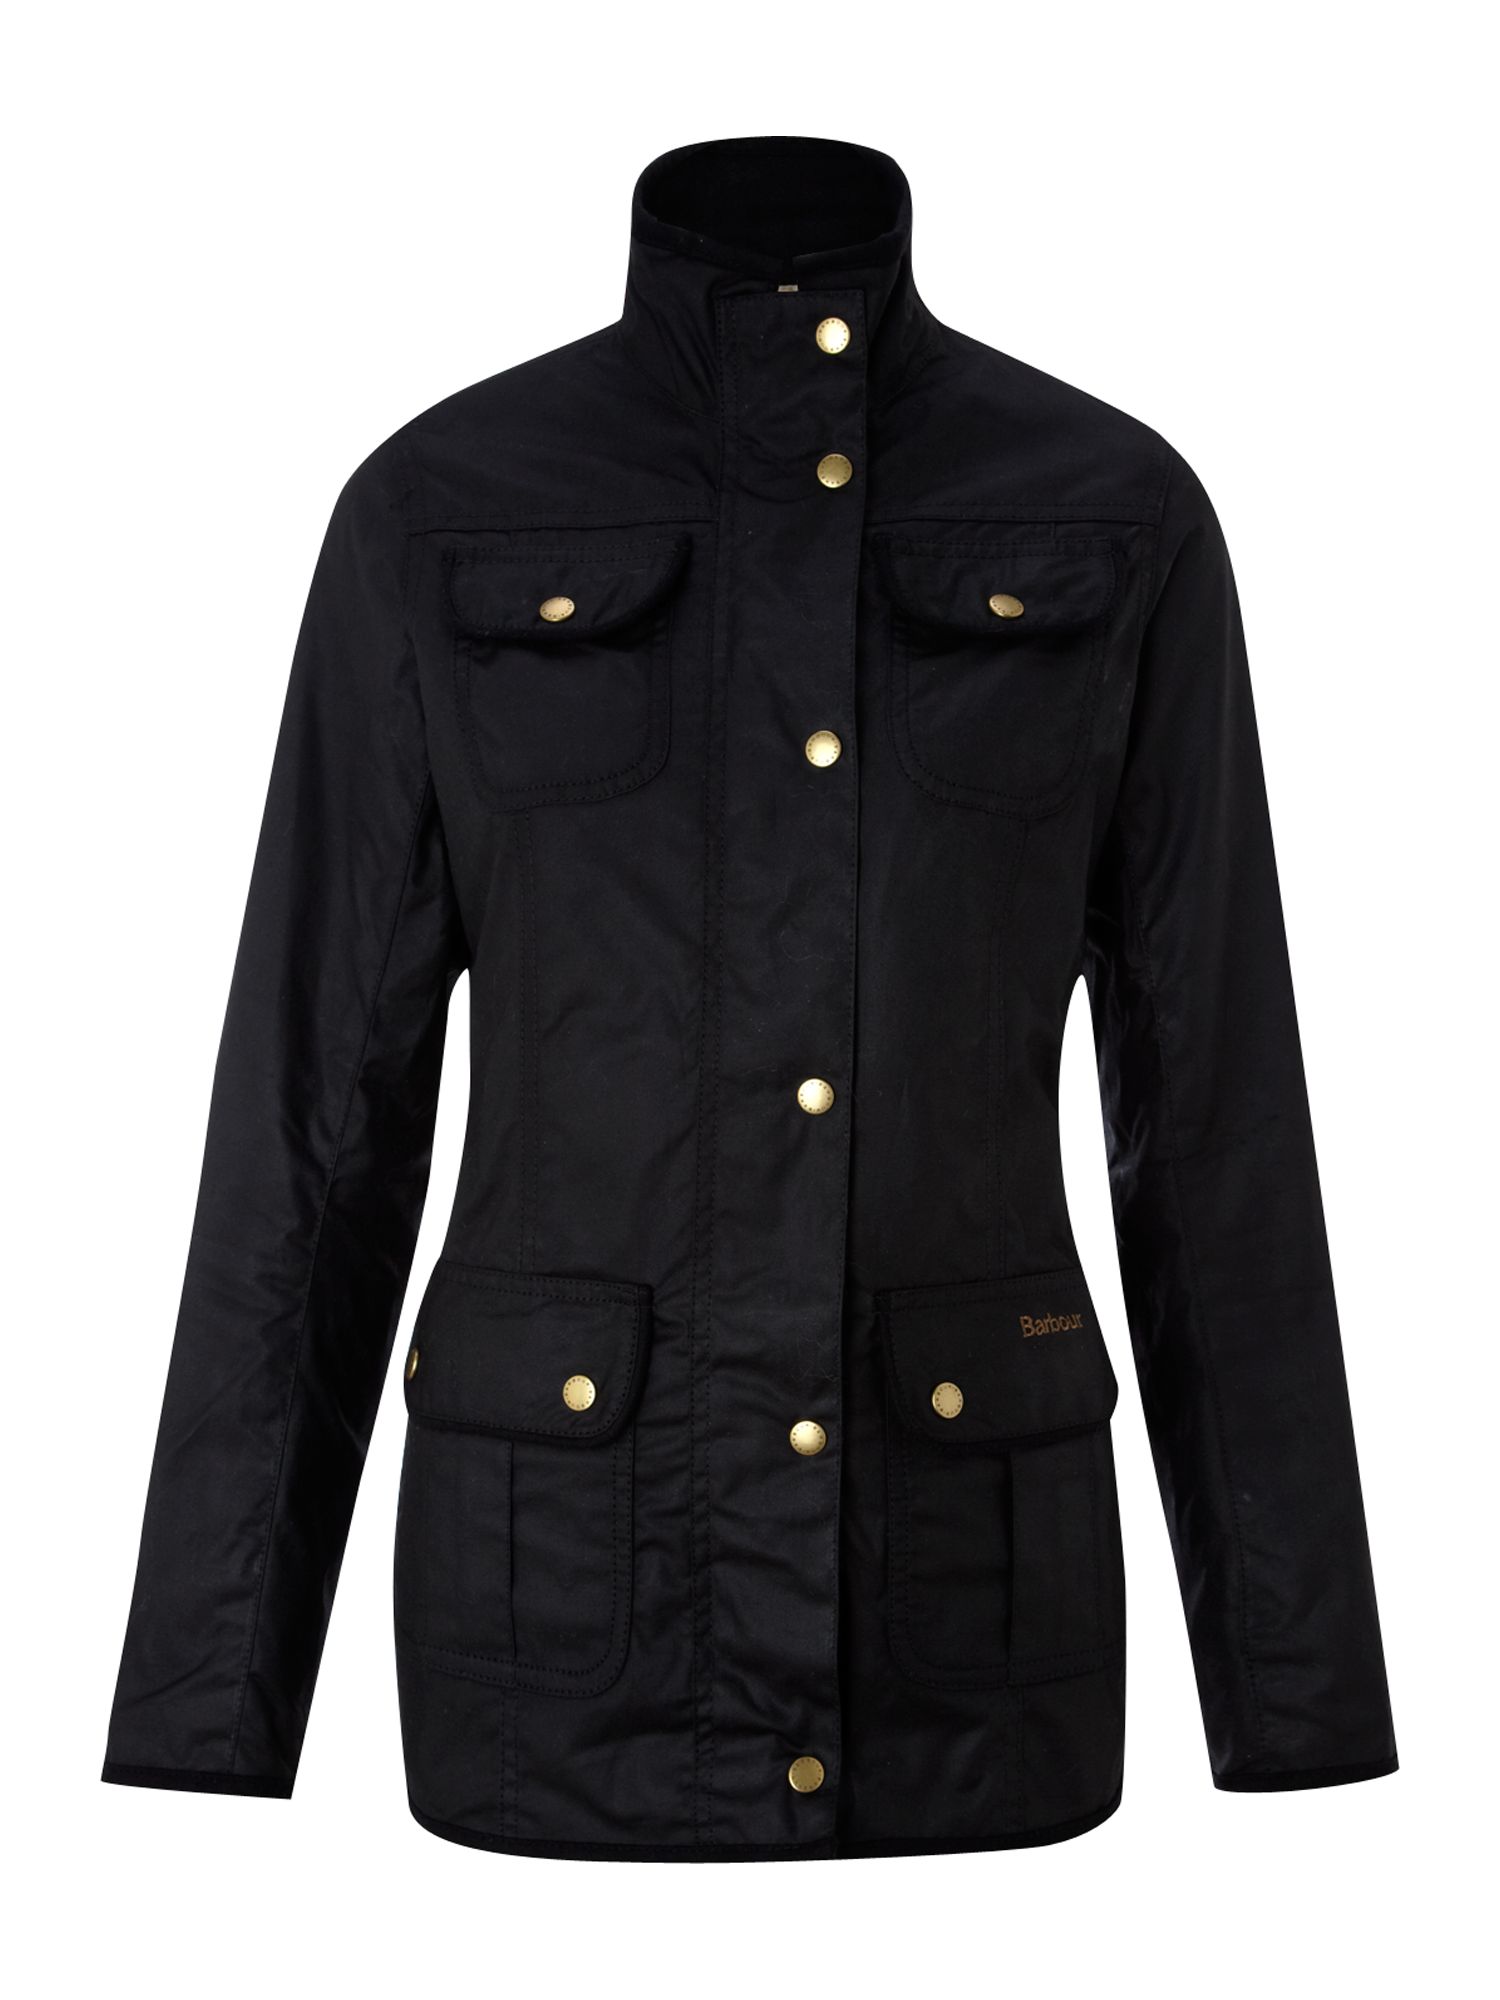 Barbour Utility Wax Morris Print Jacket in Black | Lyst